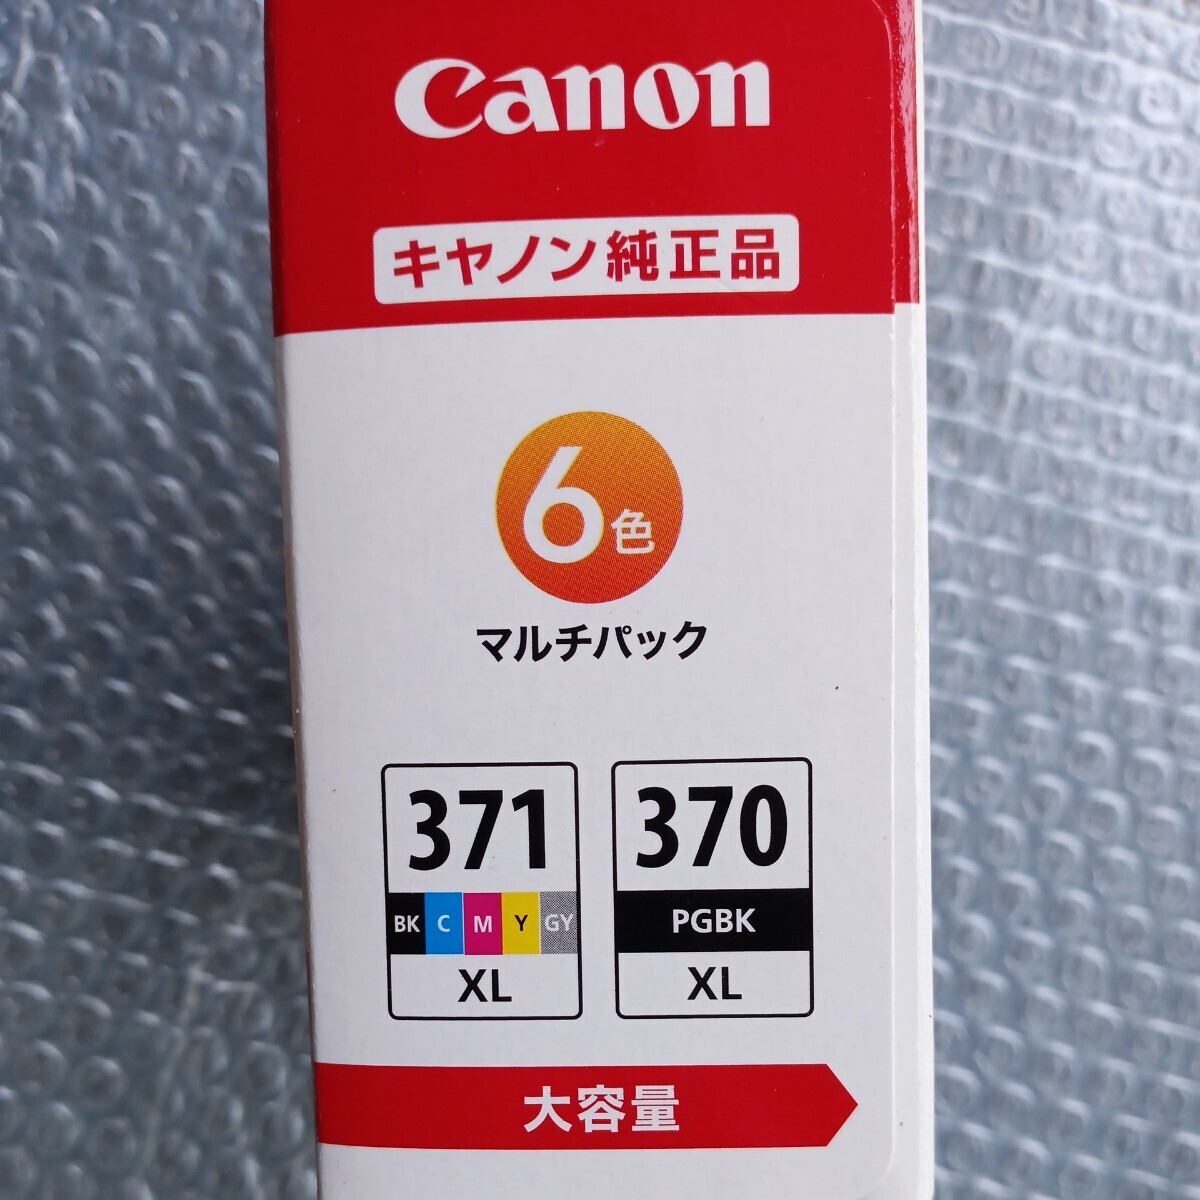 Canon 純正 インクカートリッジ BCI-371XL (BK/C/M/Y/GY) +370XL 6色マルチパック 大容量タイプ 【L判写真用紙30枚付】 _画像3